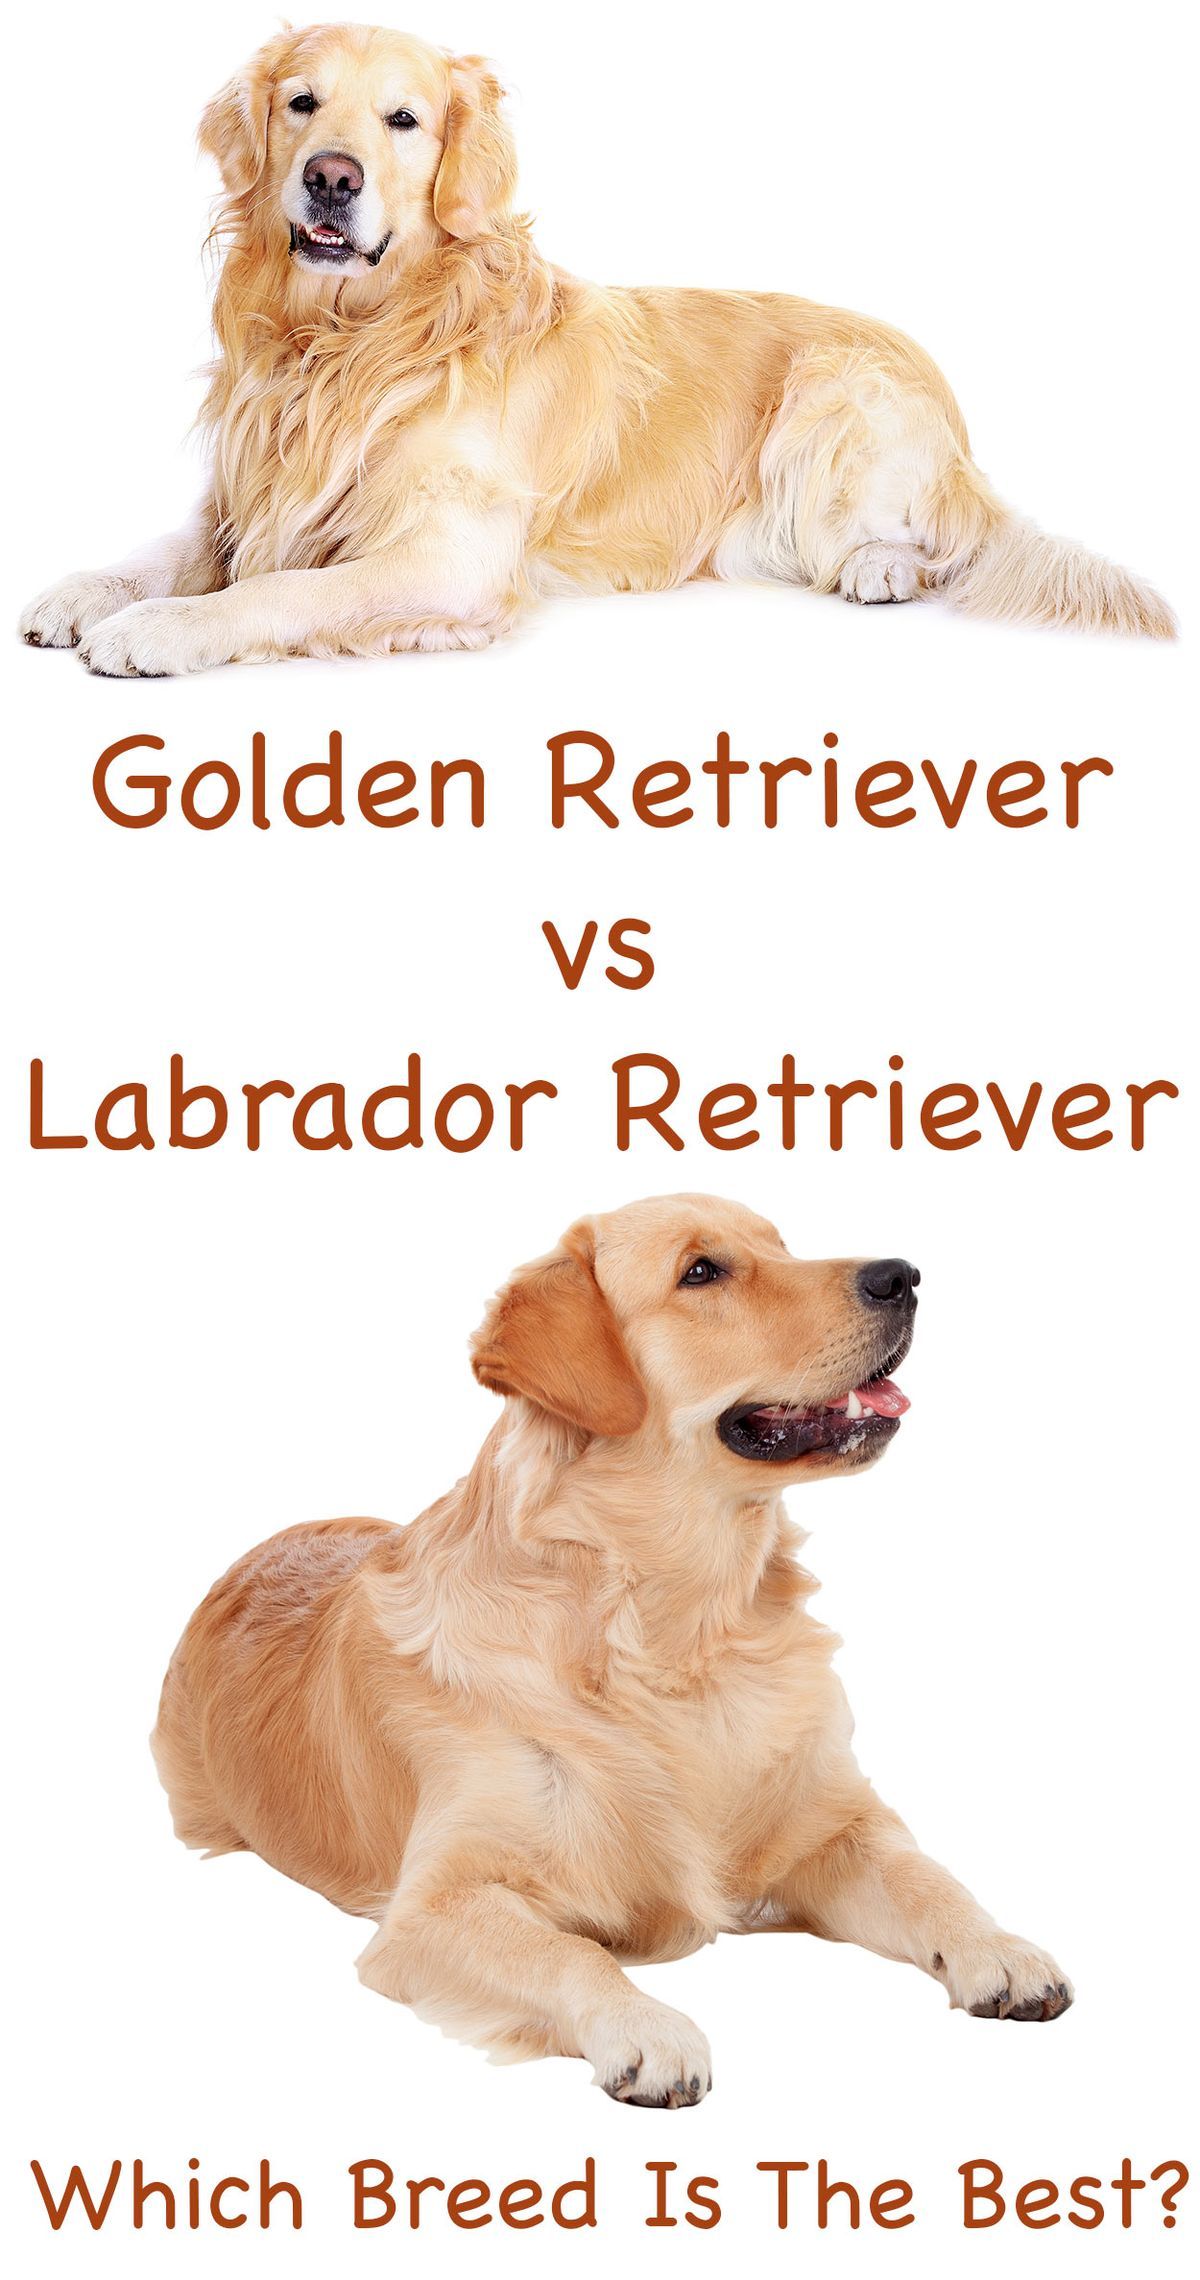 Labrador Retriever versus Golden Retriever